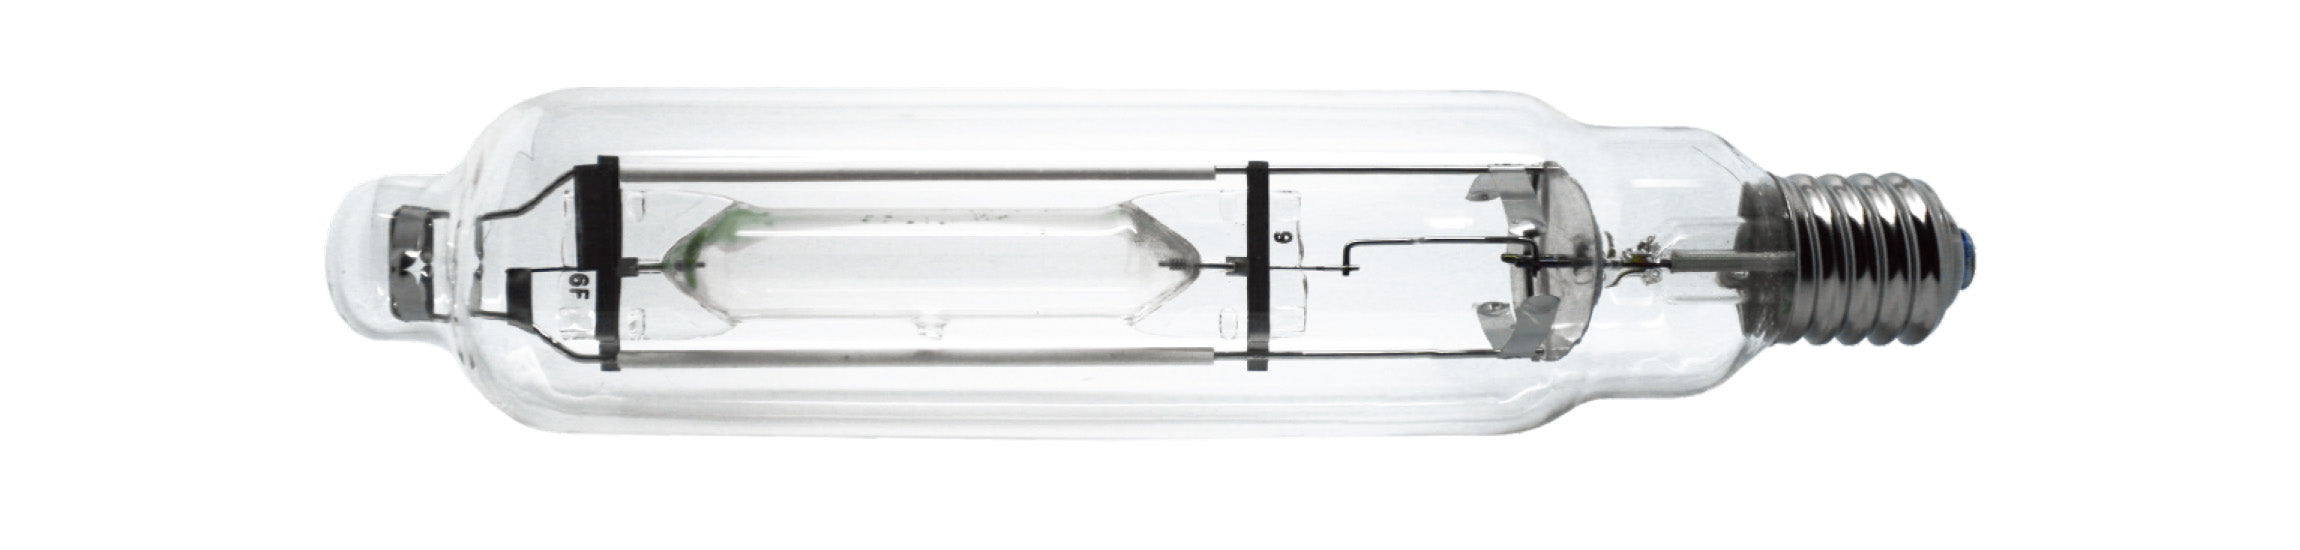 Raylux 1000w Single Ended MH Grow Light Bulb with High PAR for Digital Ballast (1000W SE MH)